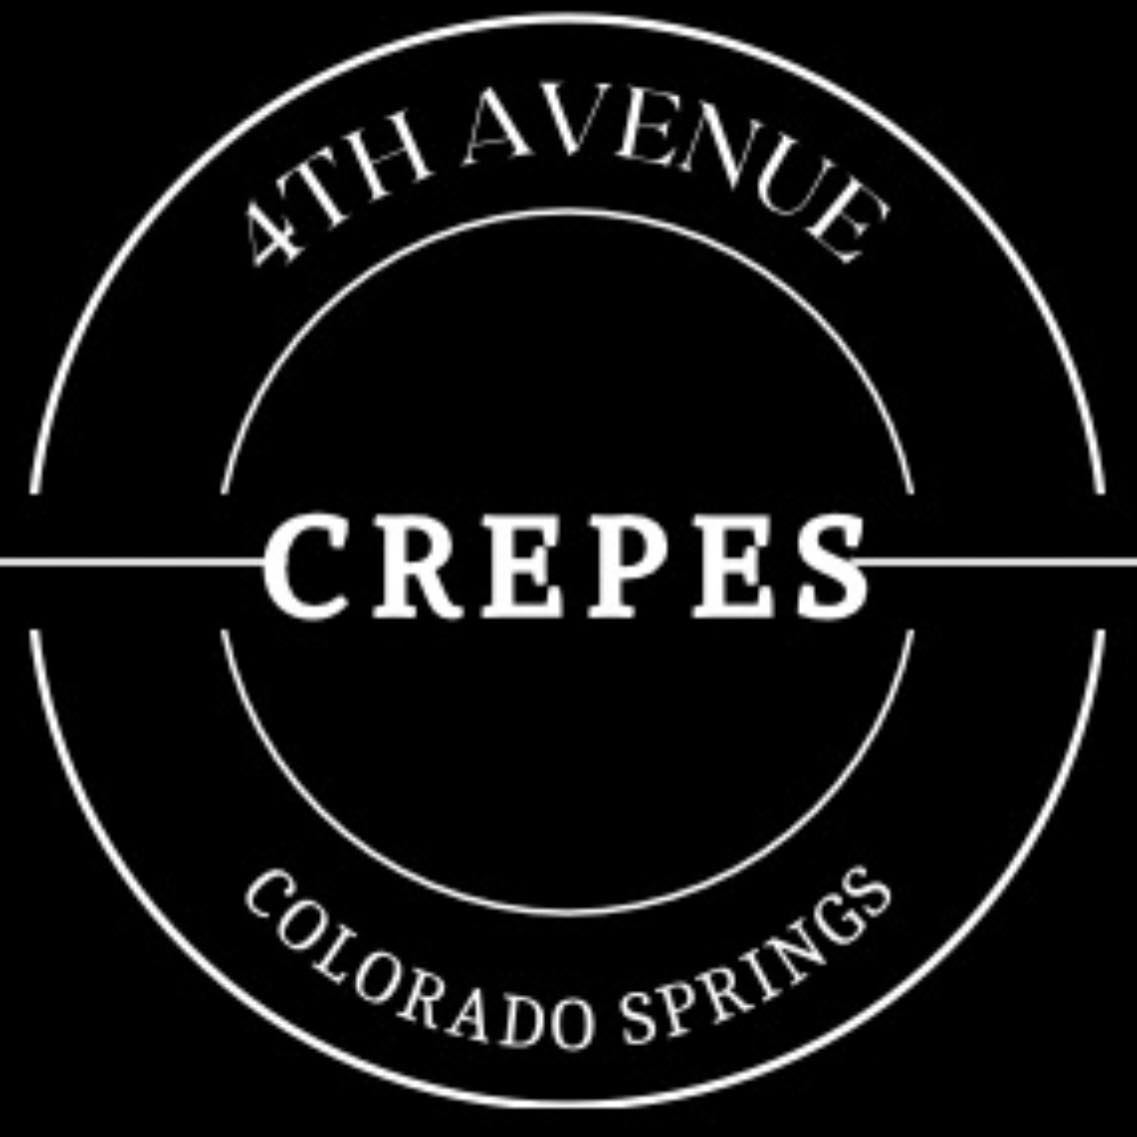 4th Avenue Crepes